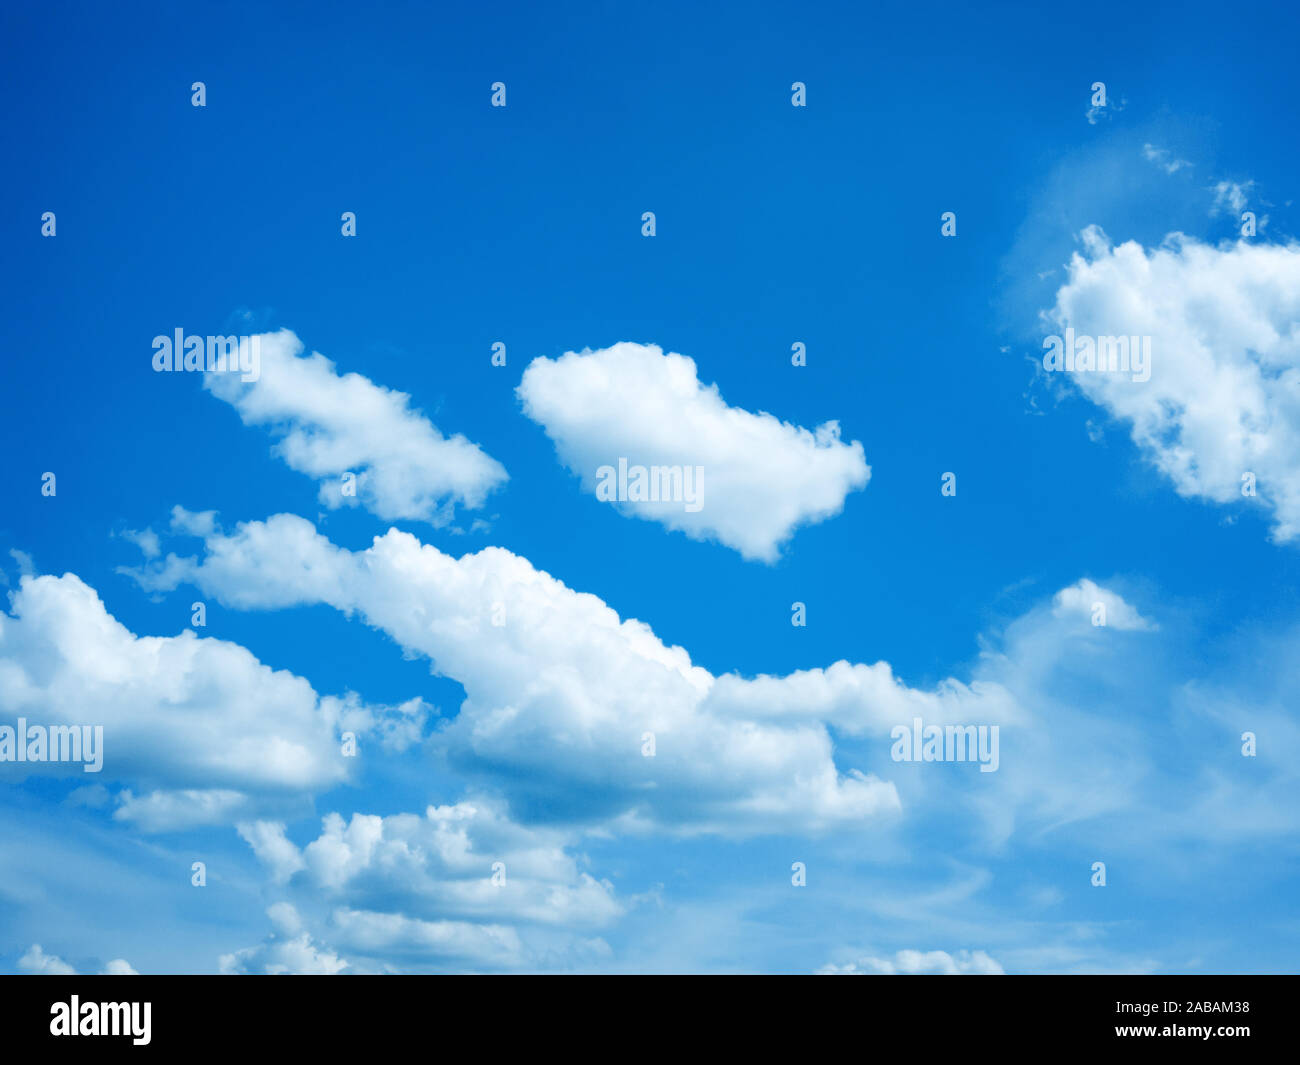 Ein schöner blauer Himmel mit weissen Wolken Stock Photo